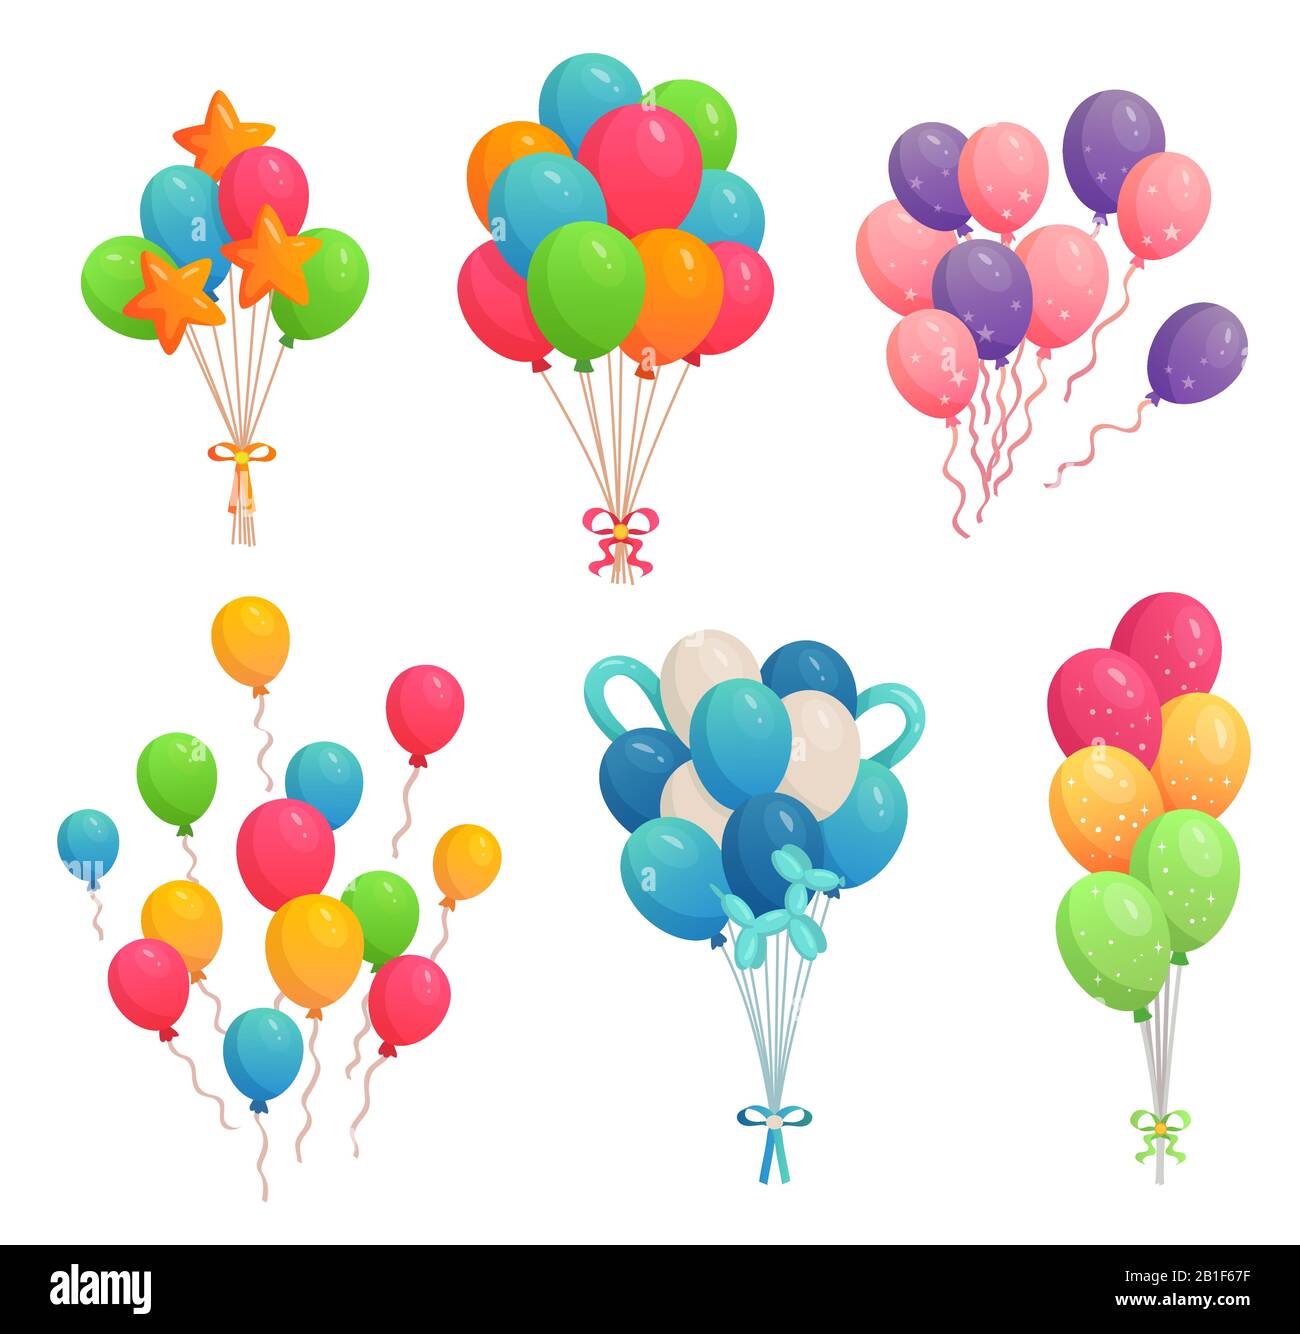 Ballons d'anniversaire de dessin animé. Ballon d'air coloré, décoration de fête et ballons d'hélium volant sur rubans illustration vectorielle Illustration de Vecteur